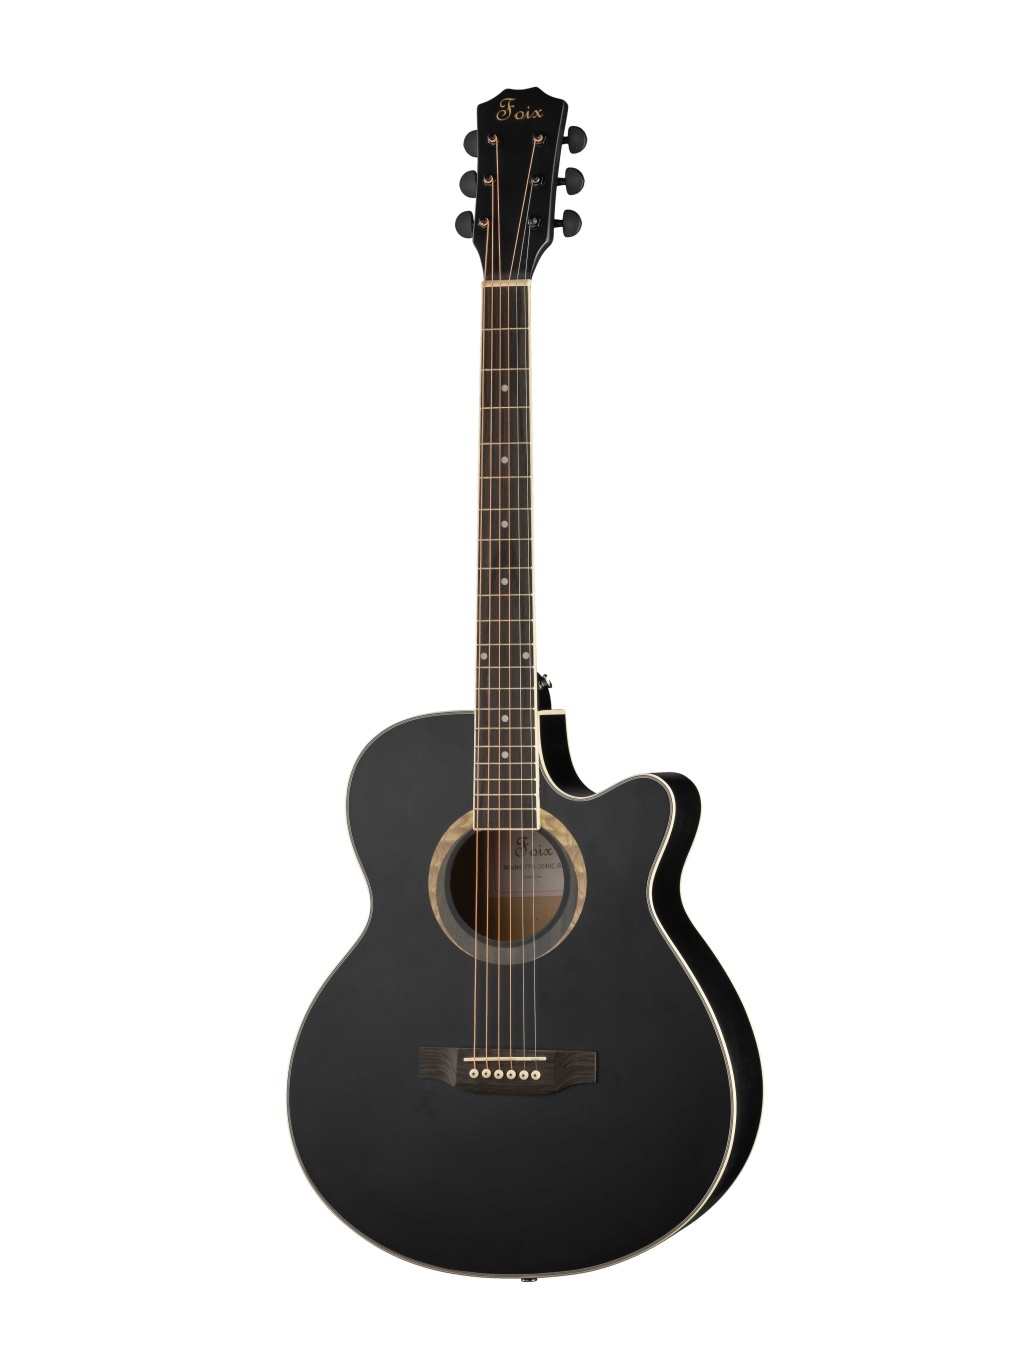 Акустические гитары Foix FFG-2040C-BK гитара деревянная soundhole sound hole обложка блок обратная связь буфер mahogany wood для eq акустические гитары фолк